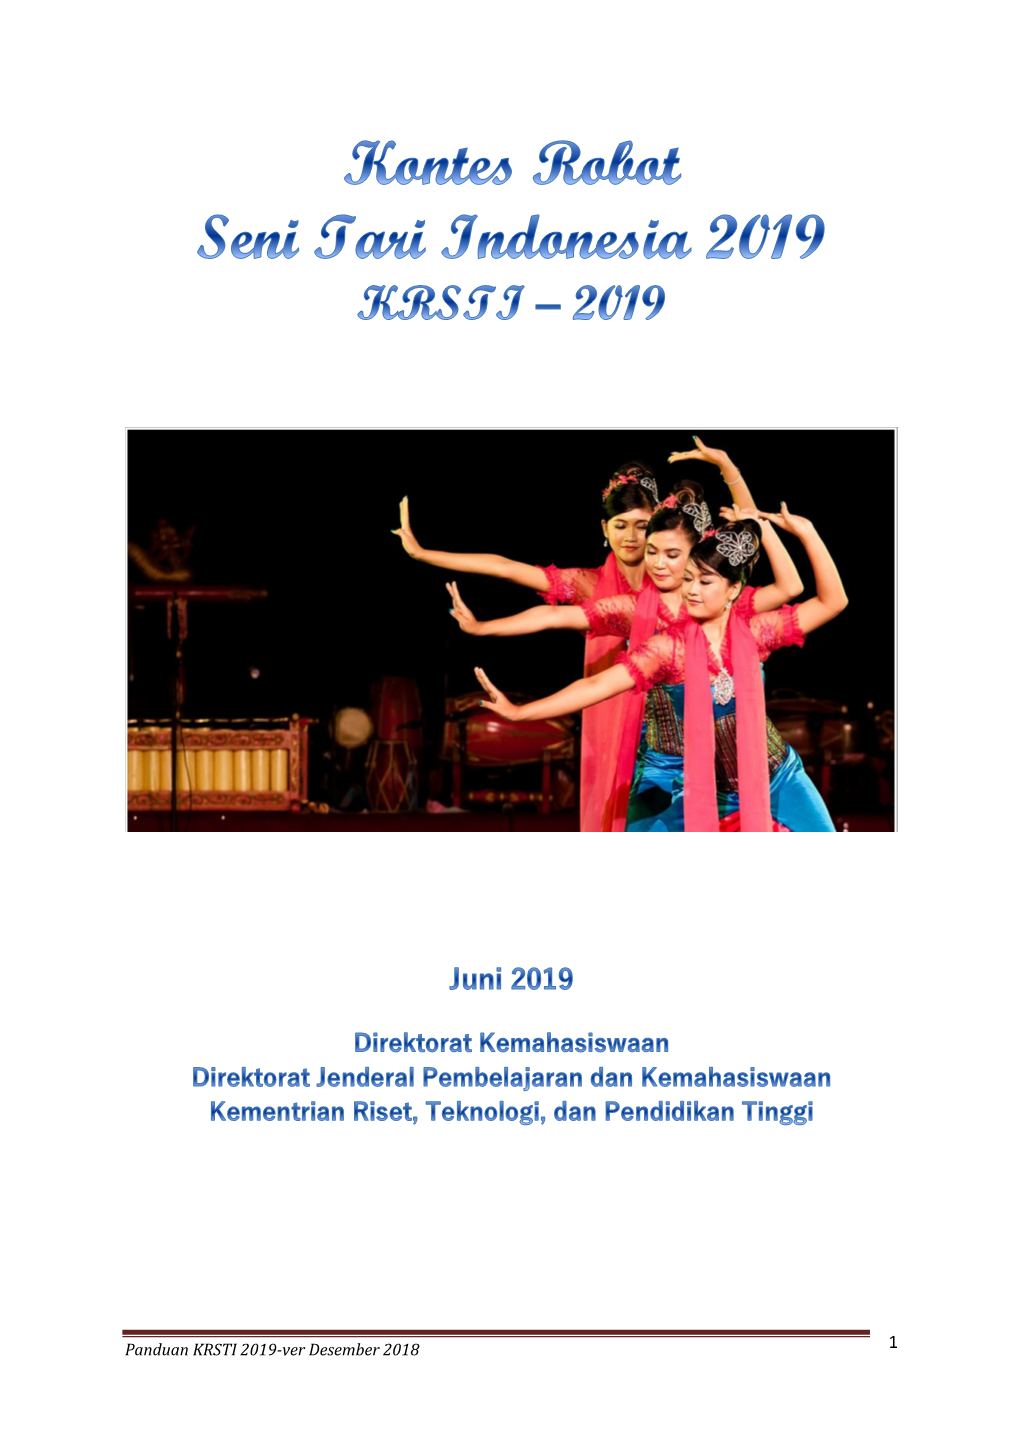 Tema Dan Aturan Kontes Robot Seni Tari Indonesia (KRSTI) Tahun 2019